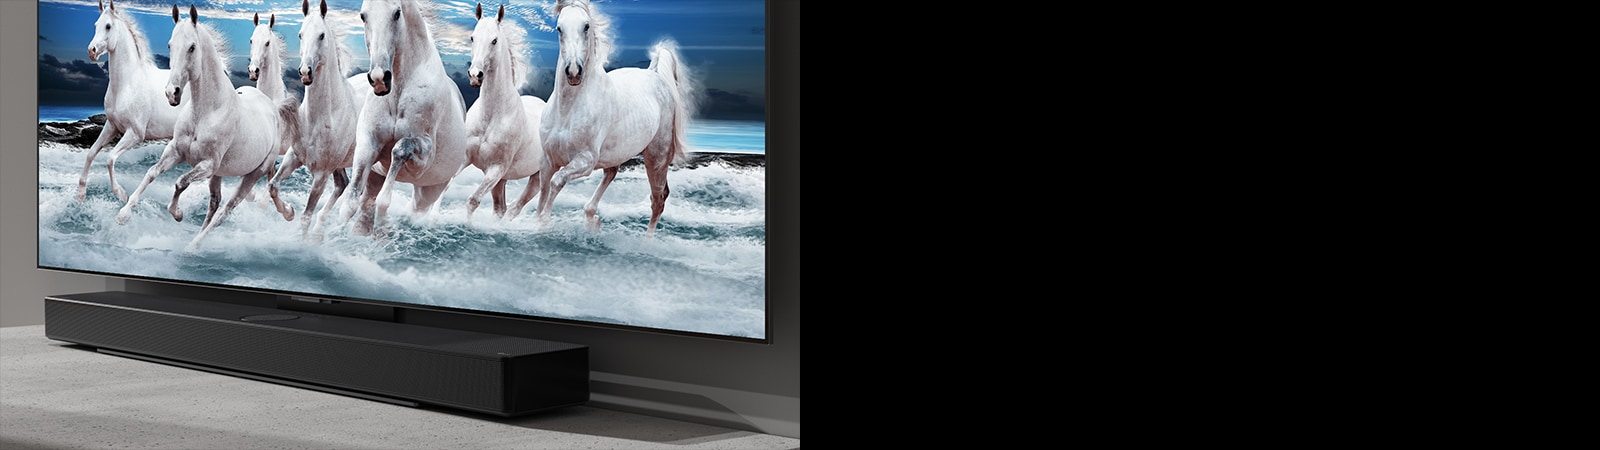 Звукова панель і телевізор розміщені на білому столі, а на екрані телевізора показано сім білих коней.